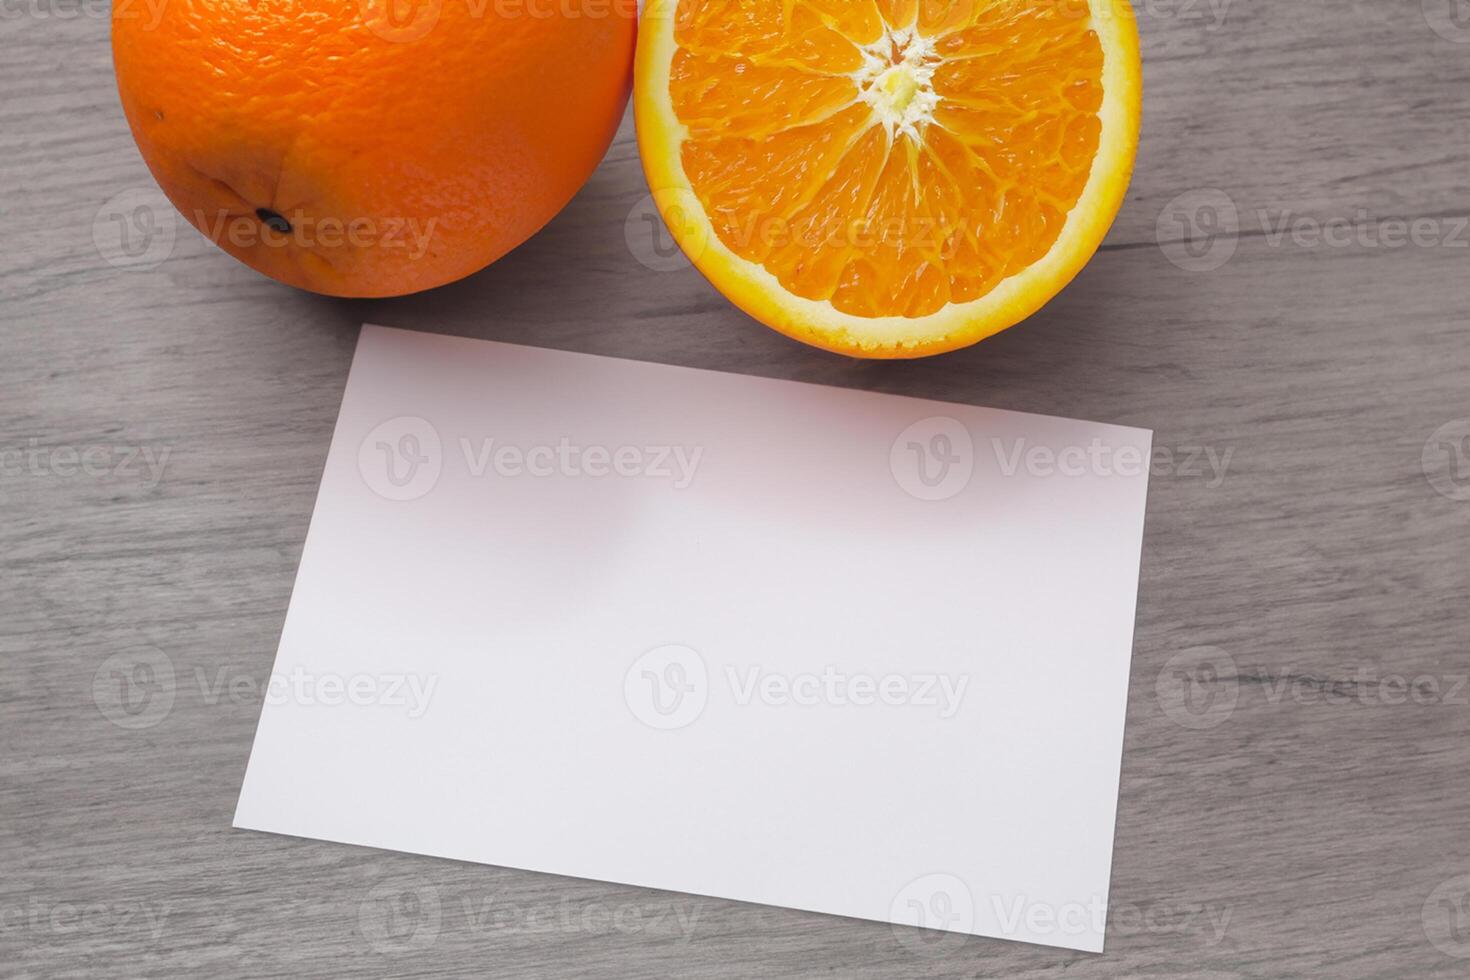 blanc papier maquette animé par le piquant aura de Frais des oranges, artisanat une visuel symphonie de culinaire opulence et sain conception photo